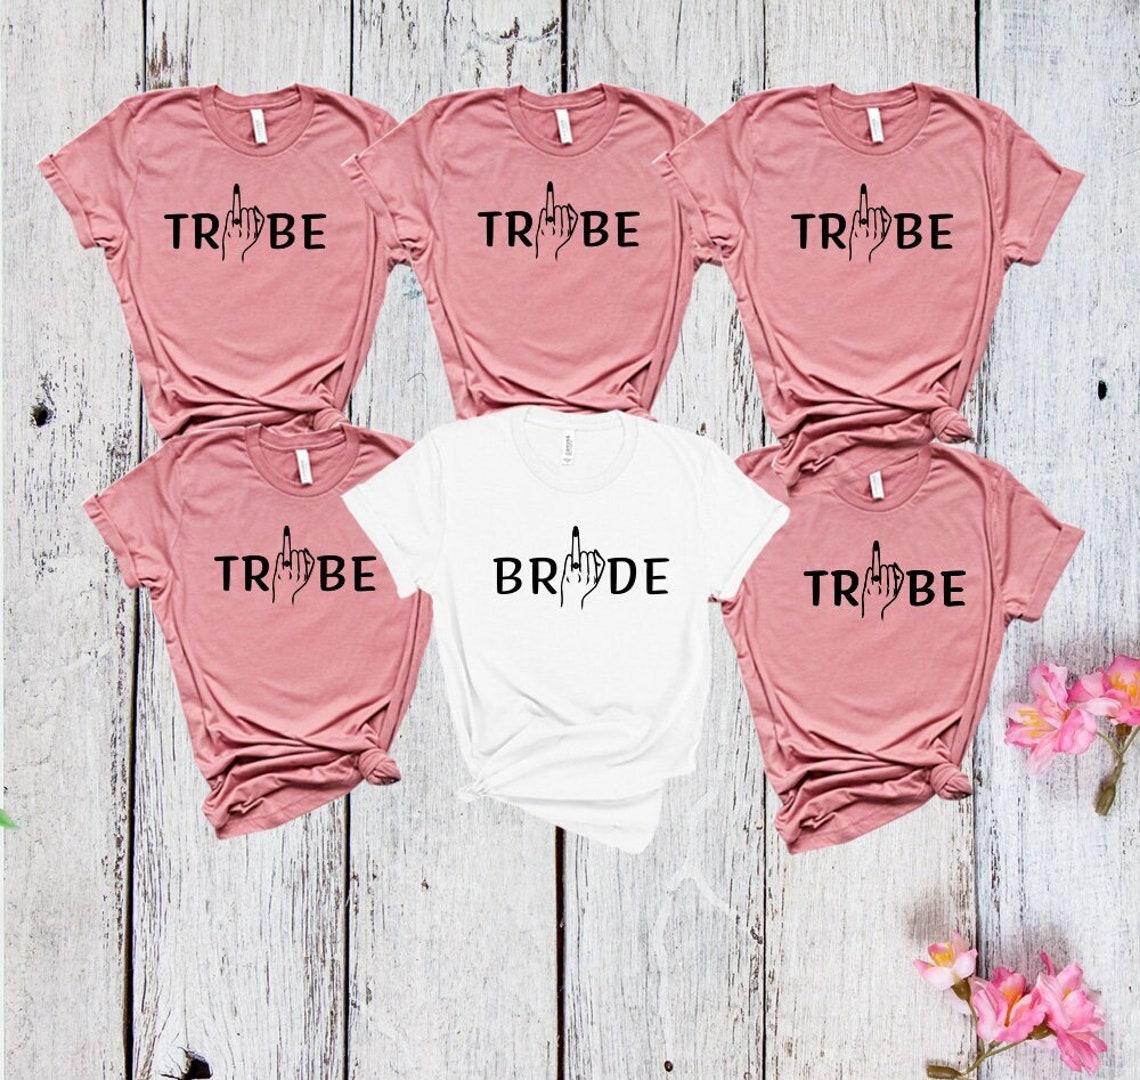 Жіноча футболка на дівич-вечір Bridе Tribe для нареченої і її подружок